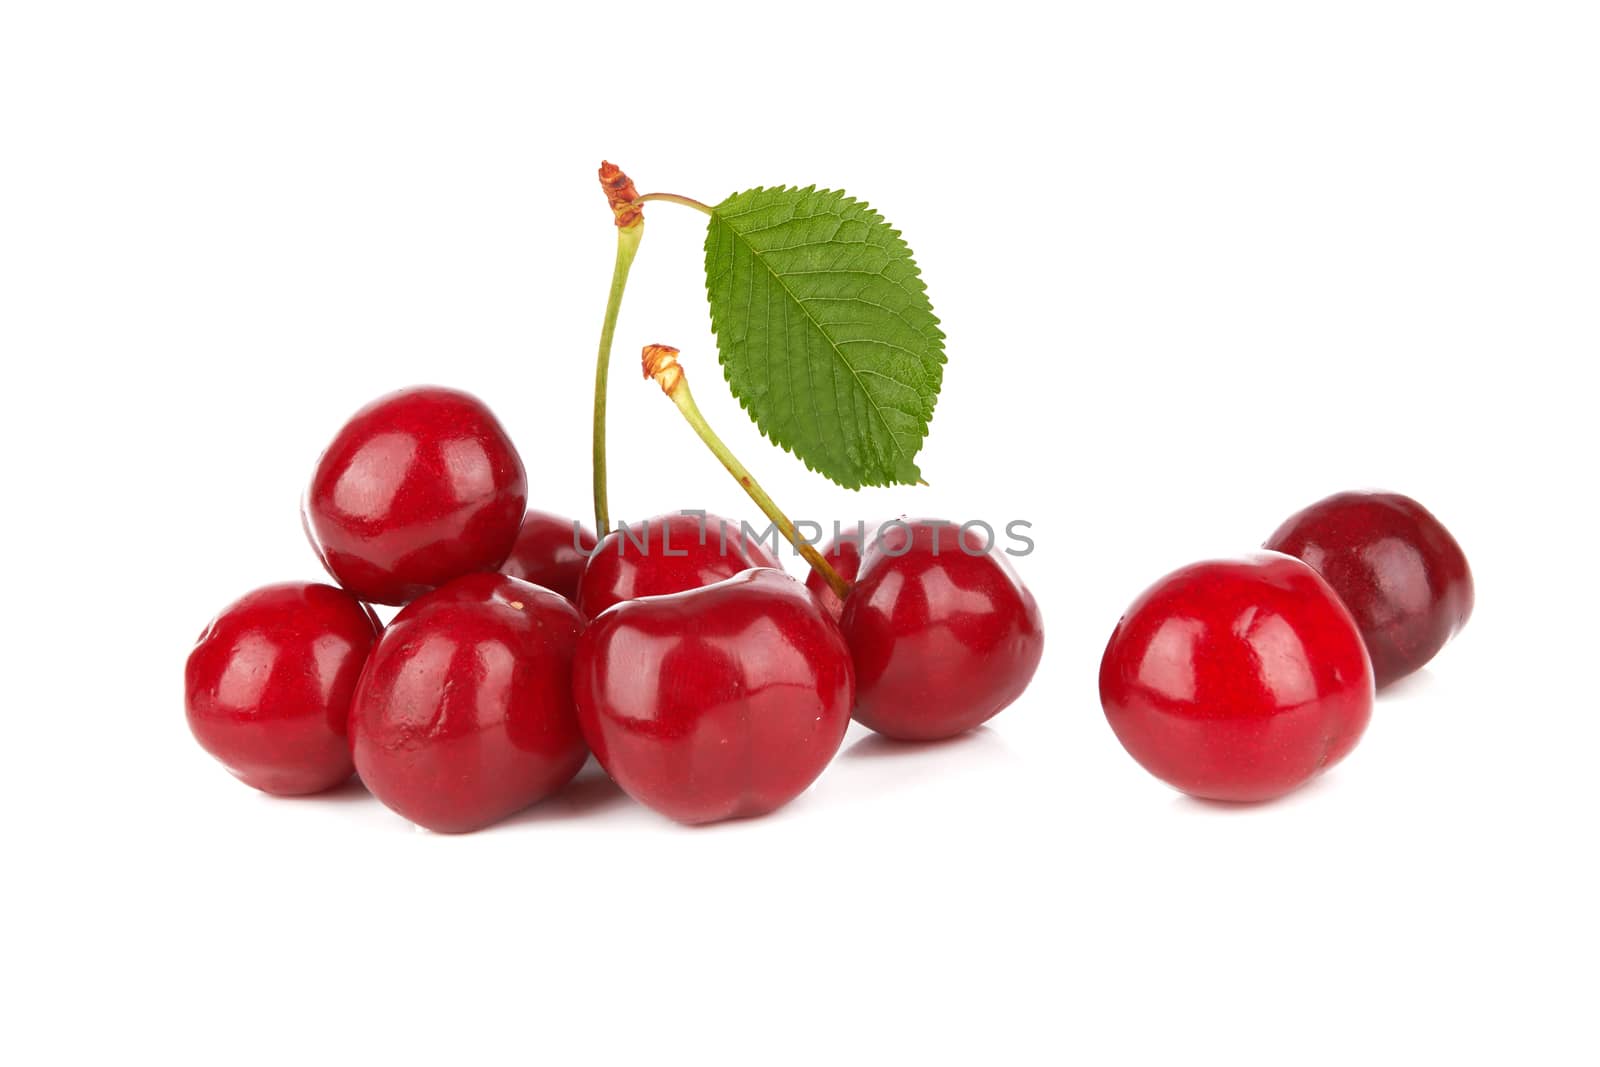 Sweet cherries by pioneer111